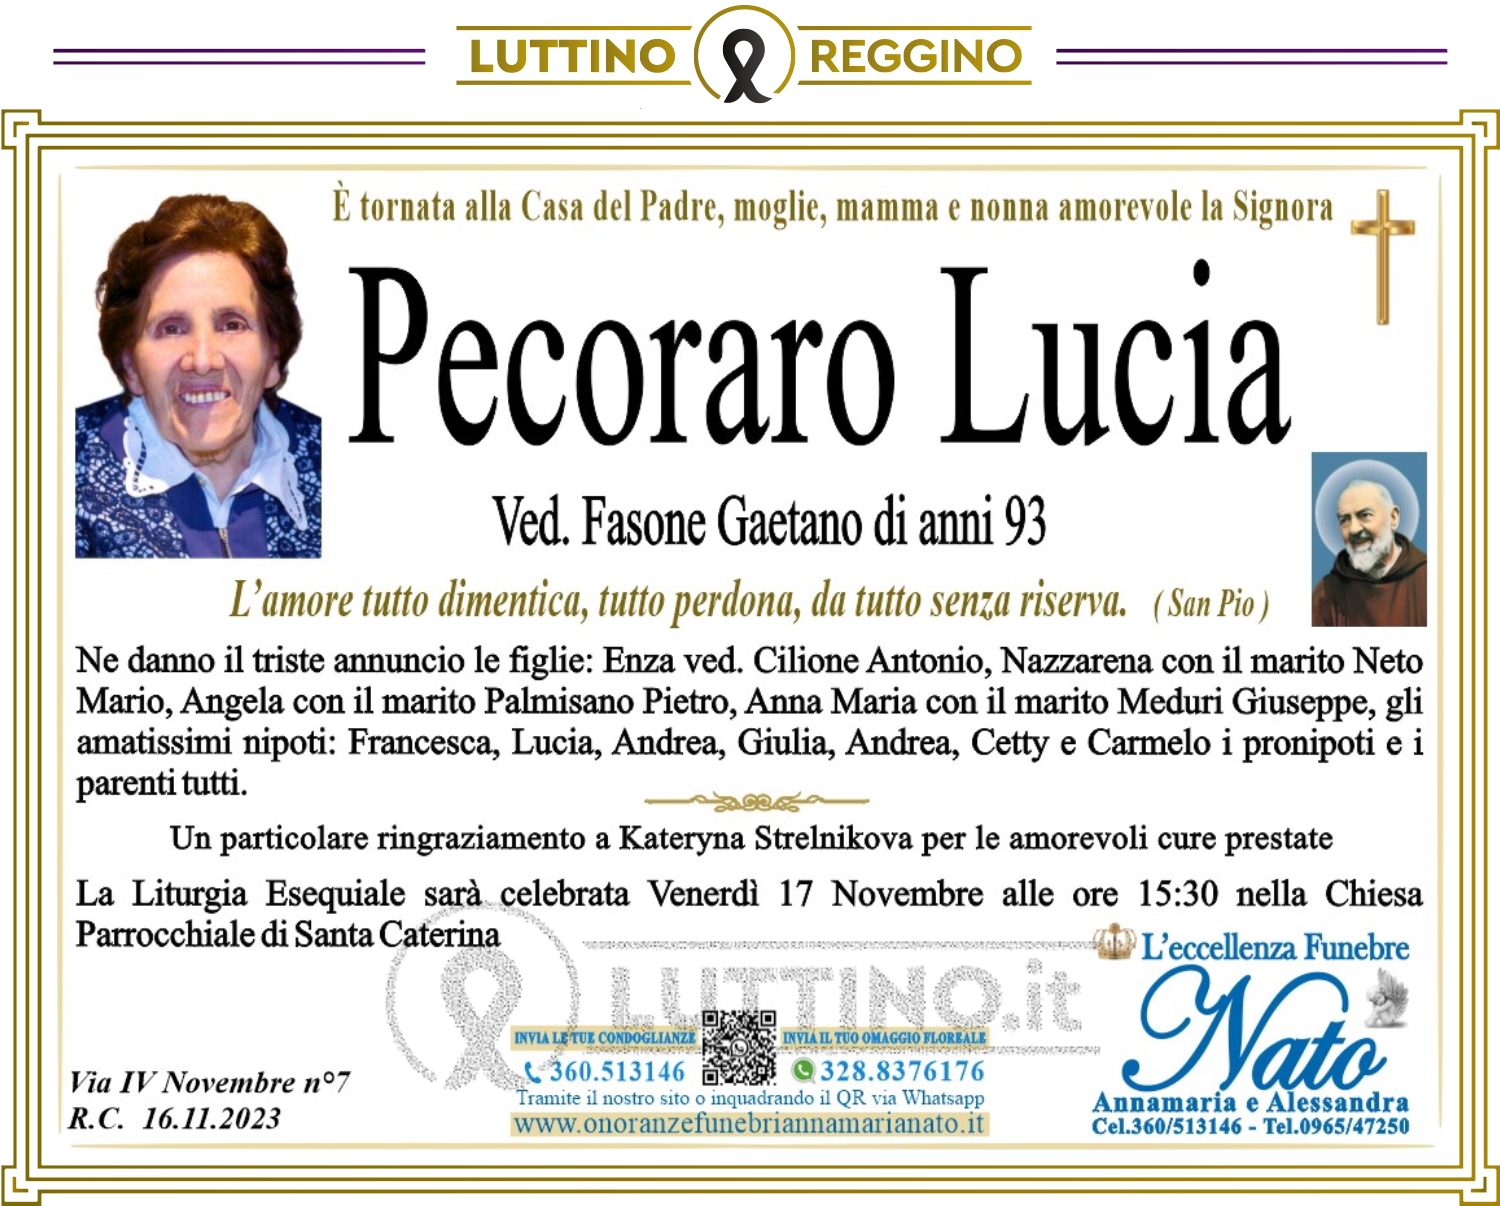 Lucia Pecoraro